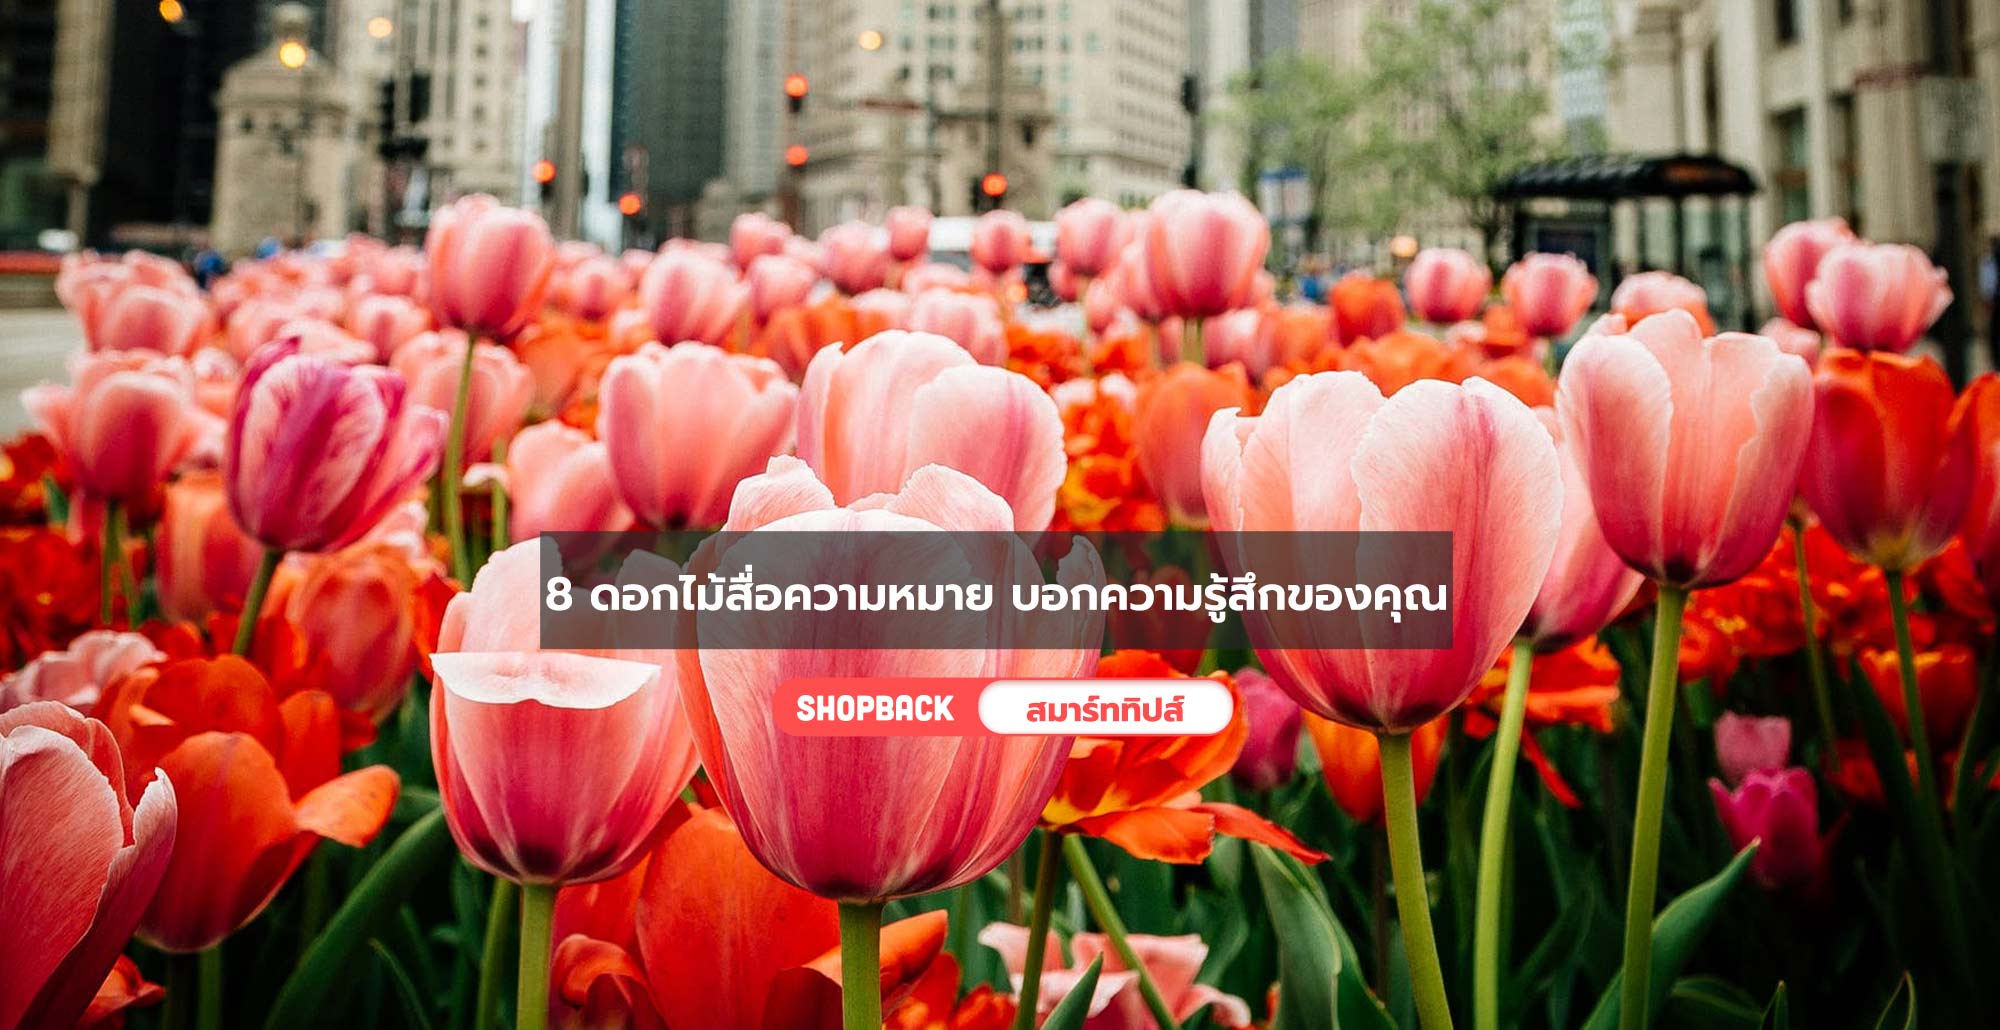 8 ดอกไม้สื่อความหมายดีๆ บอกความรู้สึกผ่านภาษาดอกไม้กัน